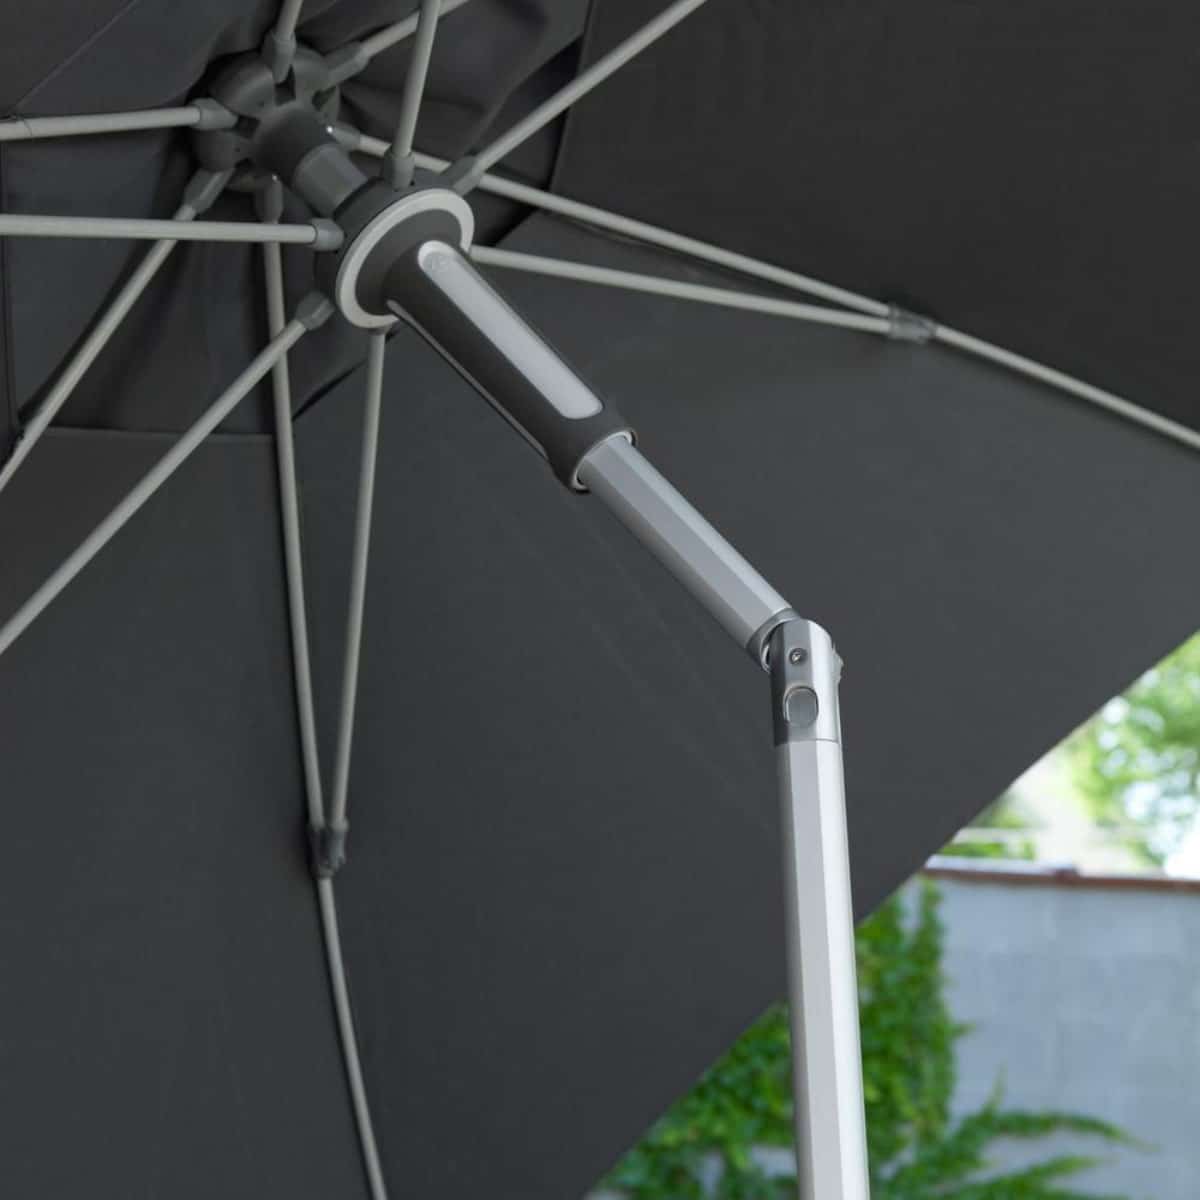 Особенности зонтиков для патио - наклон